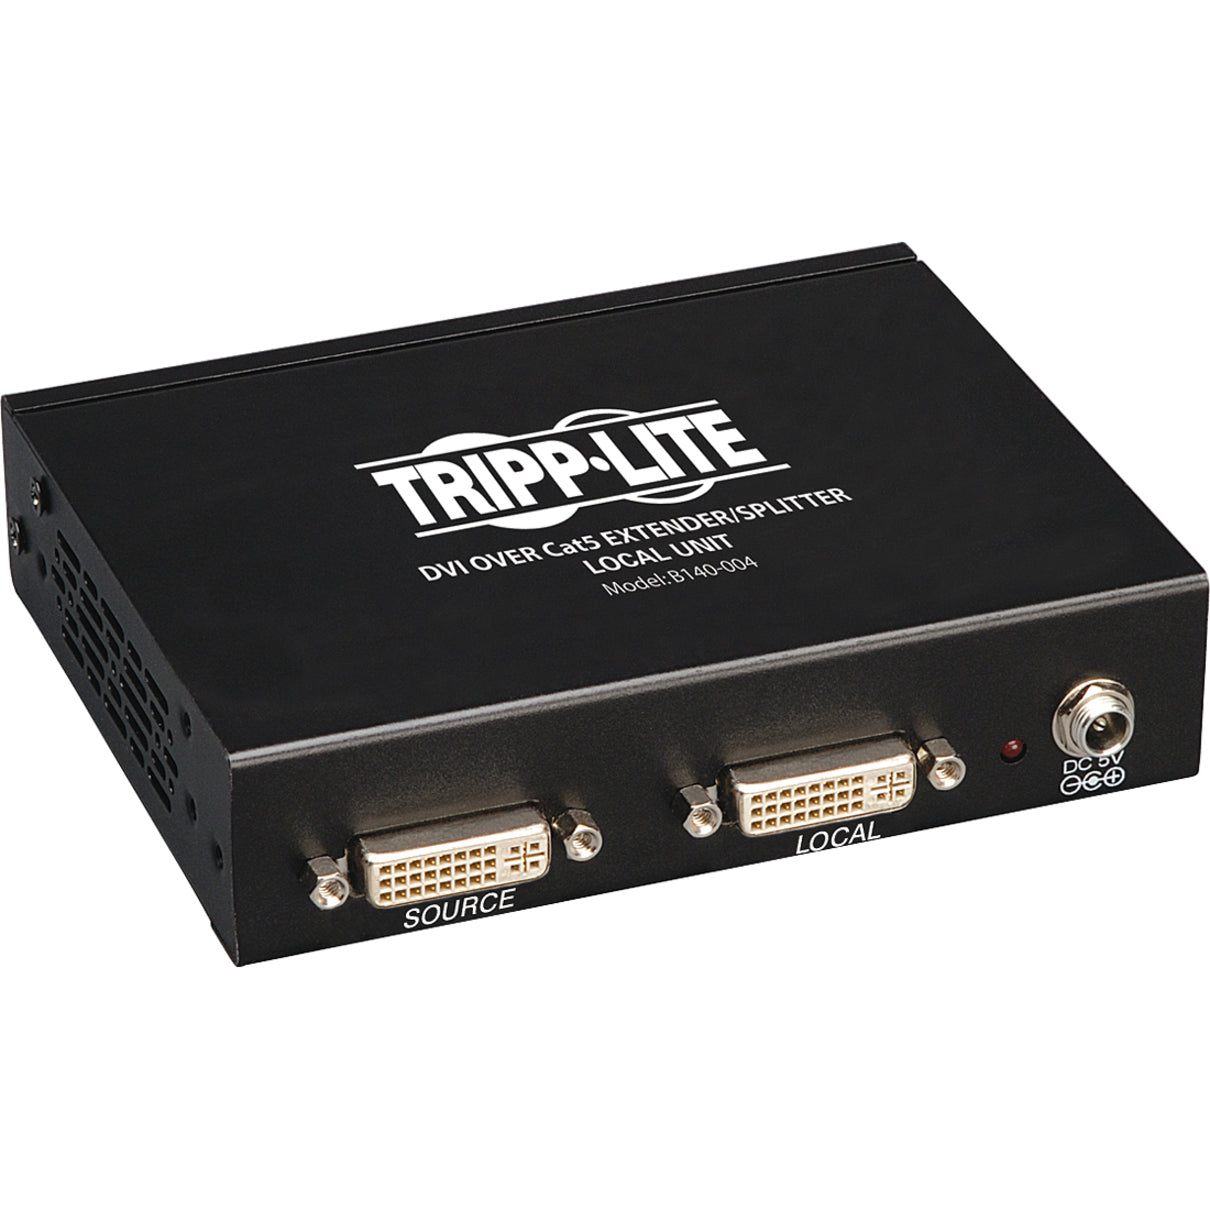 Tripp Lite B140-004 DVI sobre Cat5 Extensor/Splitter Unidad Transmisora Local de 4 Puertos Full HD 1920 x 1080 Compatible con TAA